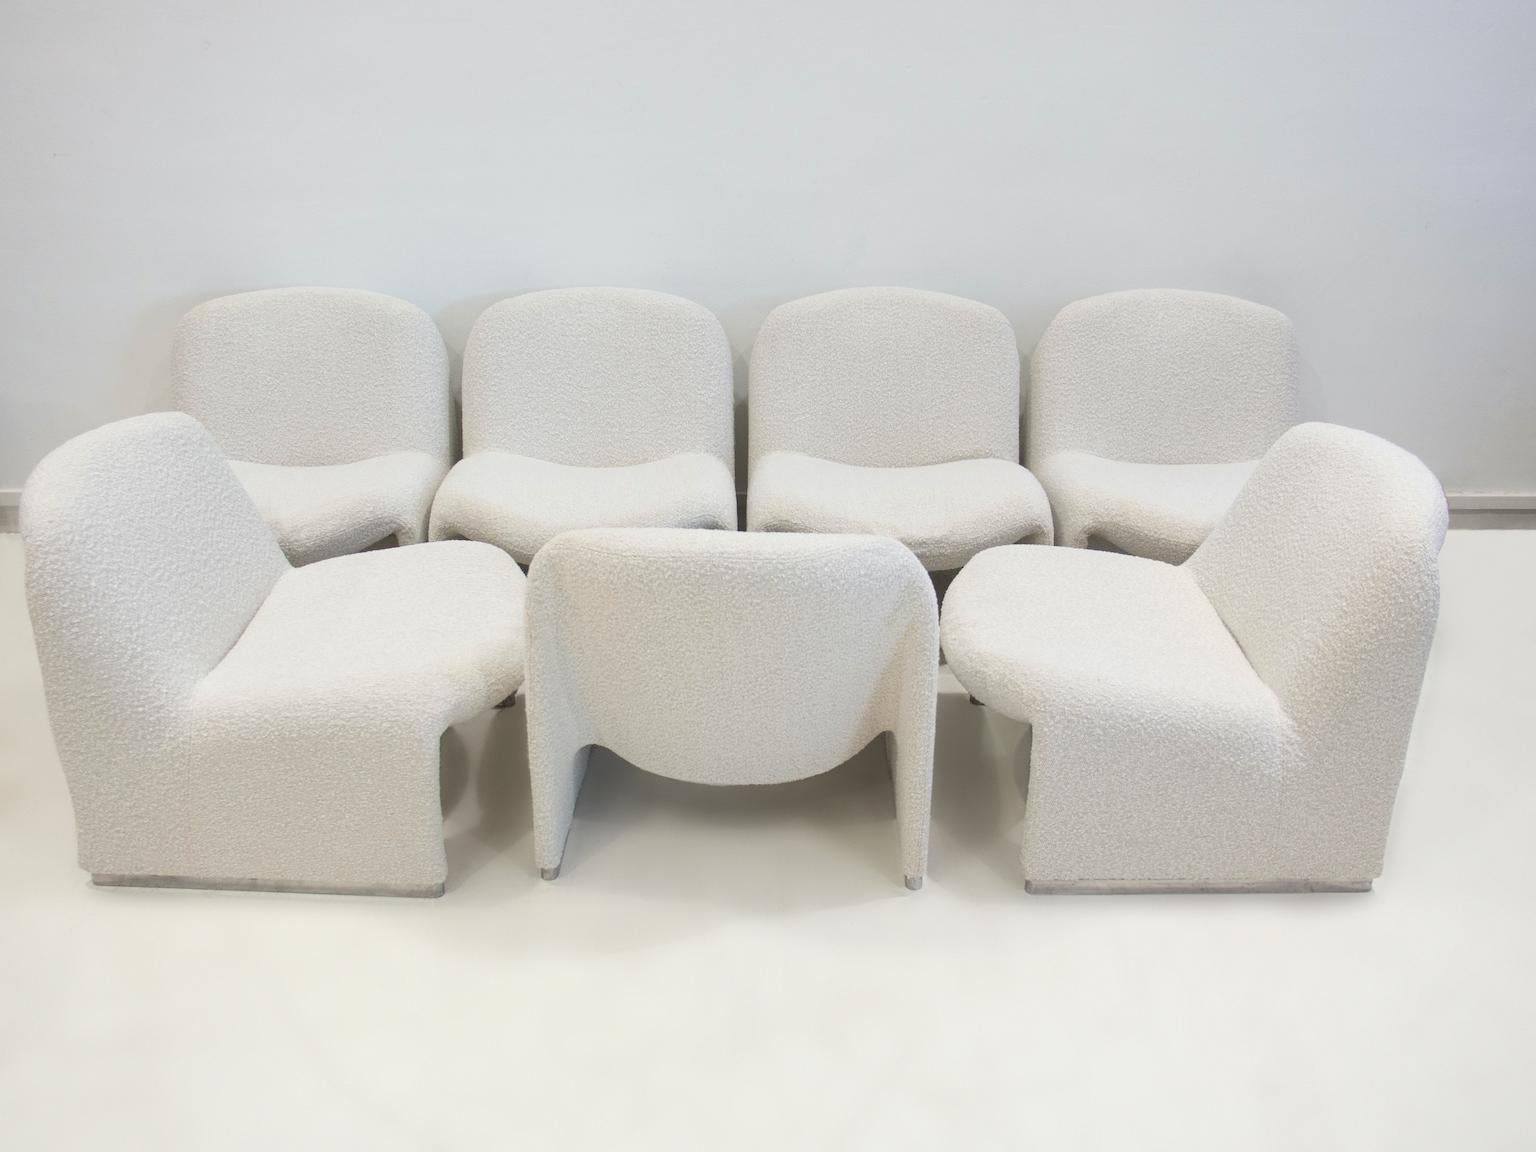 Fünf gepolsterte Giancarlo Piretti Alky Easy Chairs aus weißem Bouclé-Stoff (20. Jahrhundert)